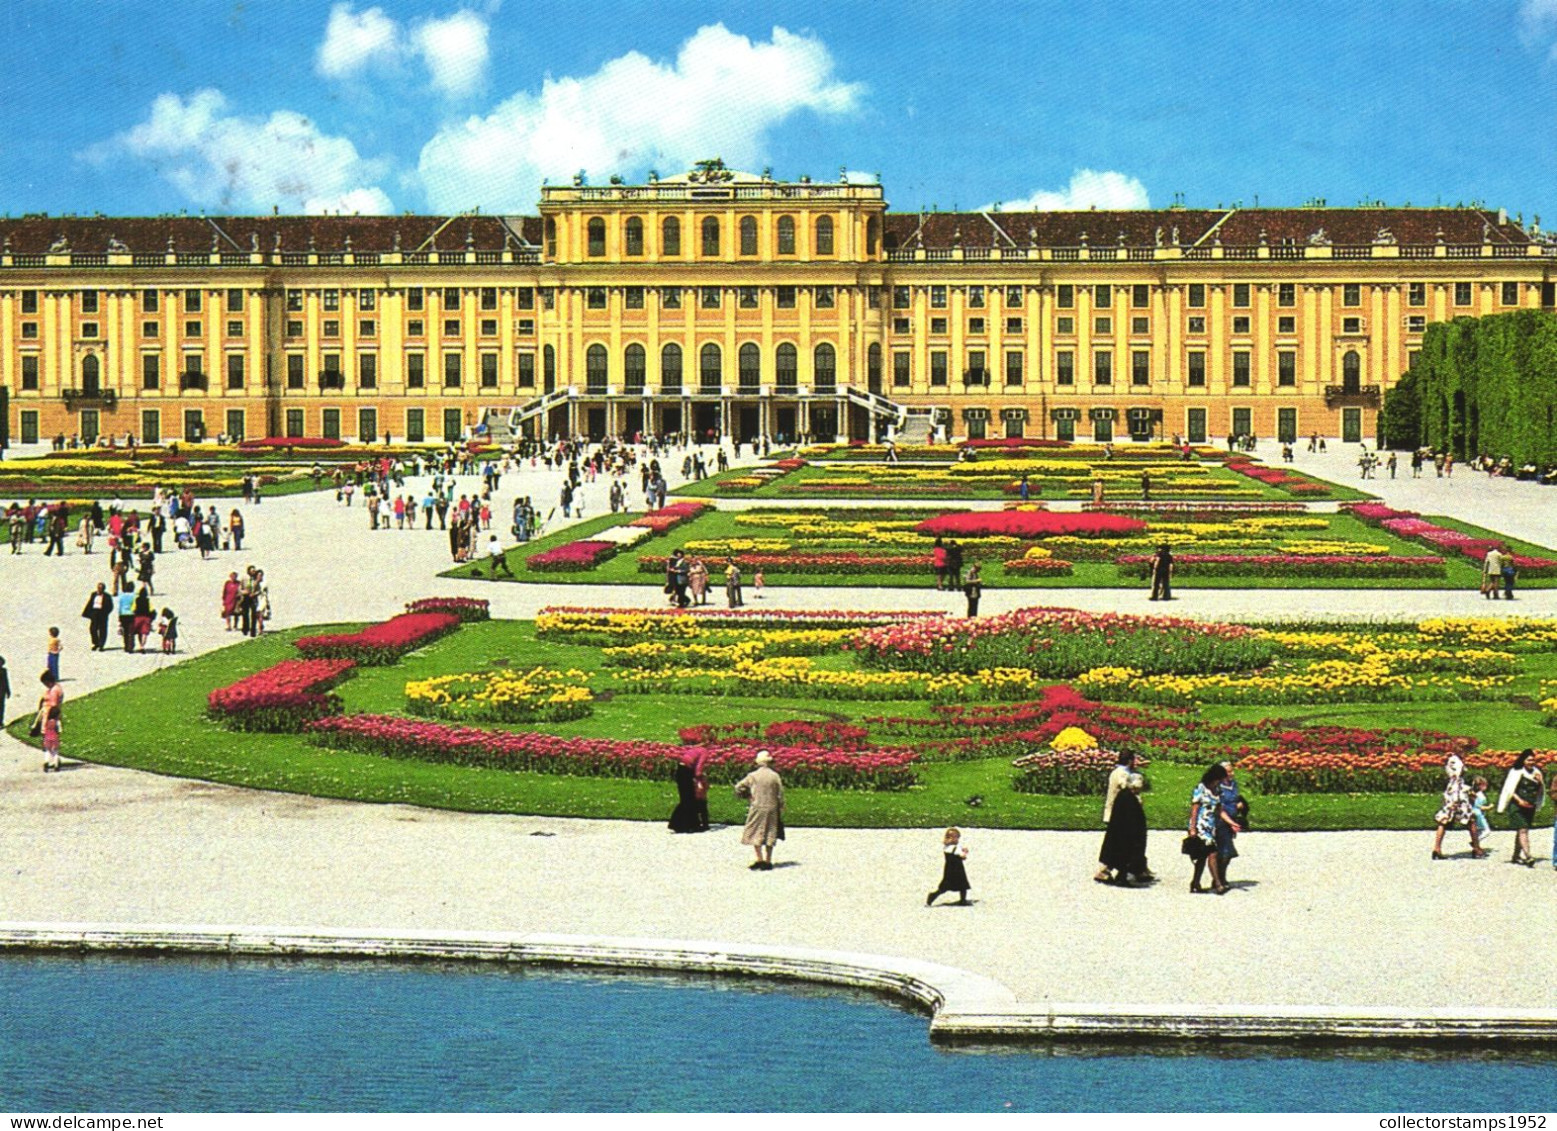 VIENNA, SCHONBRUNN PALACE, ARCHITECTURE, PARK, AUSTRIA, POSTCARD - Schönbrunn Palace